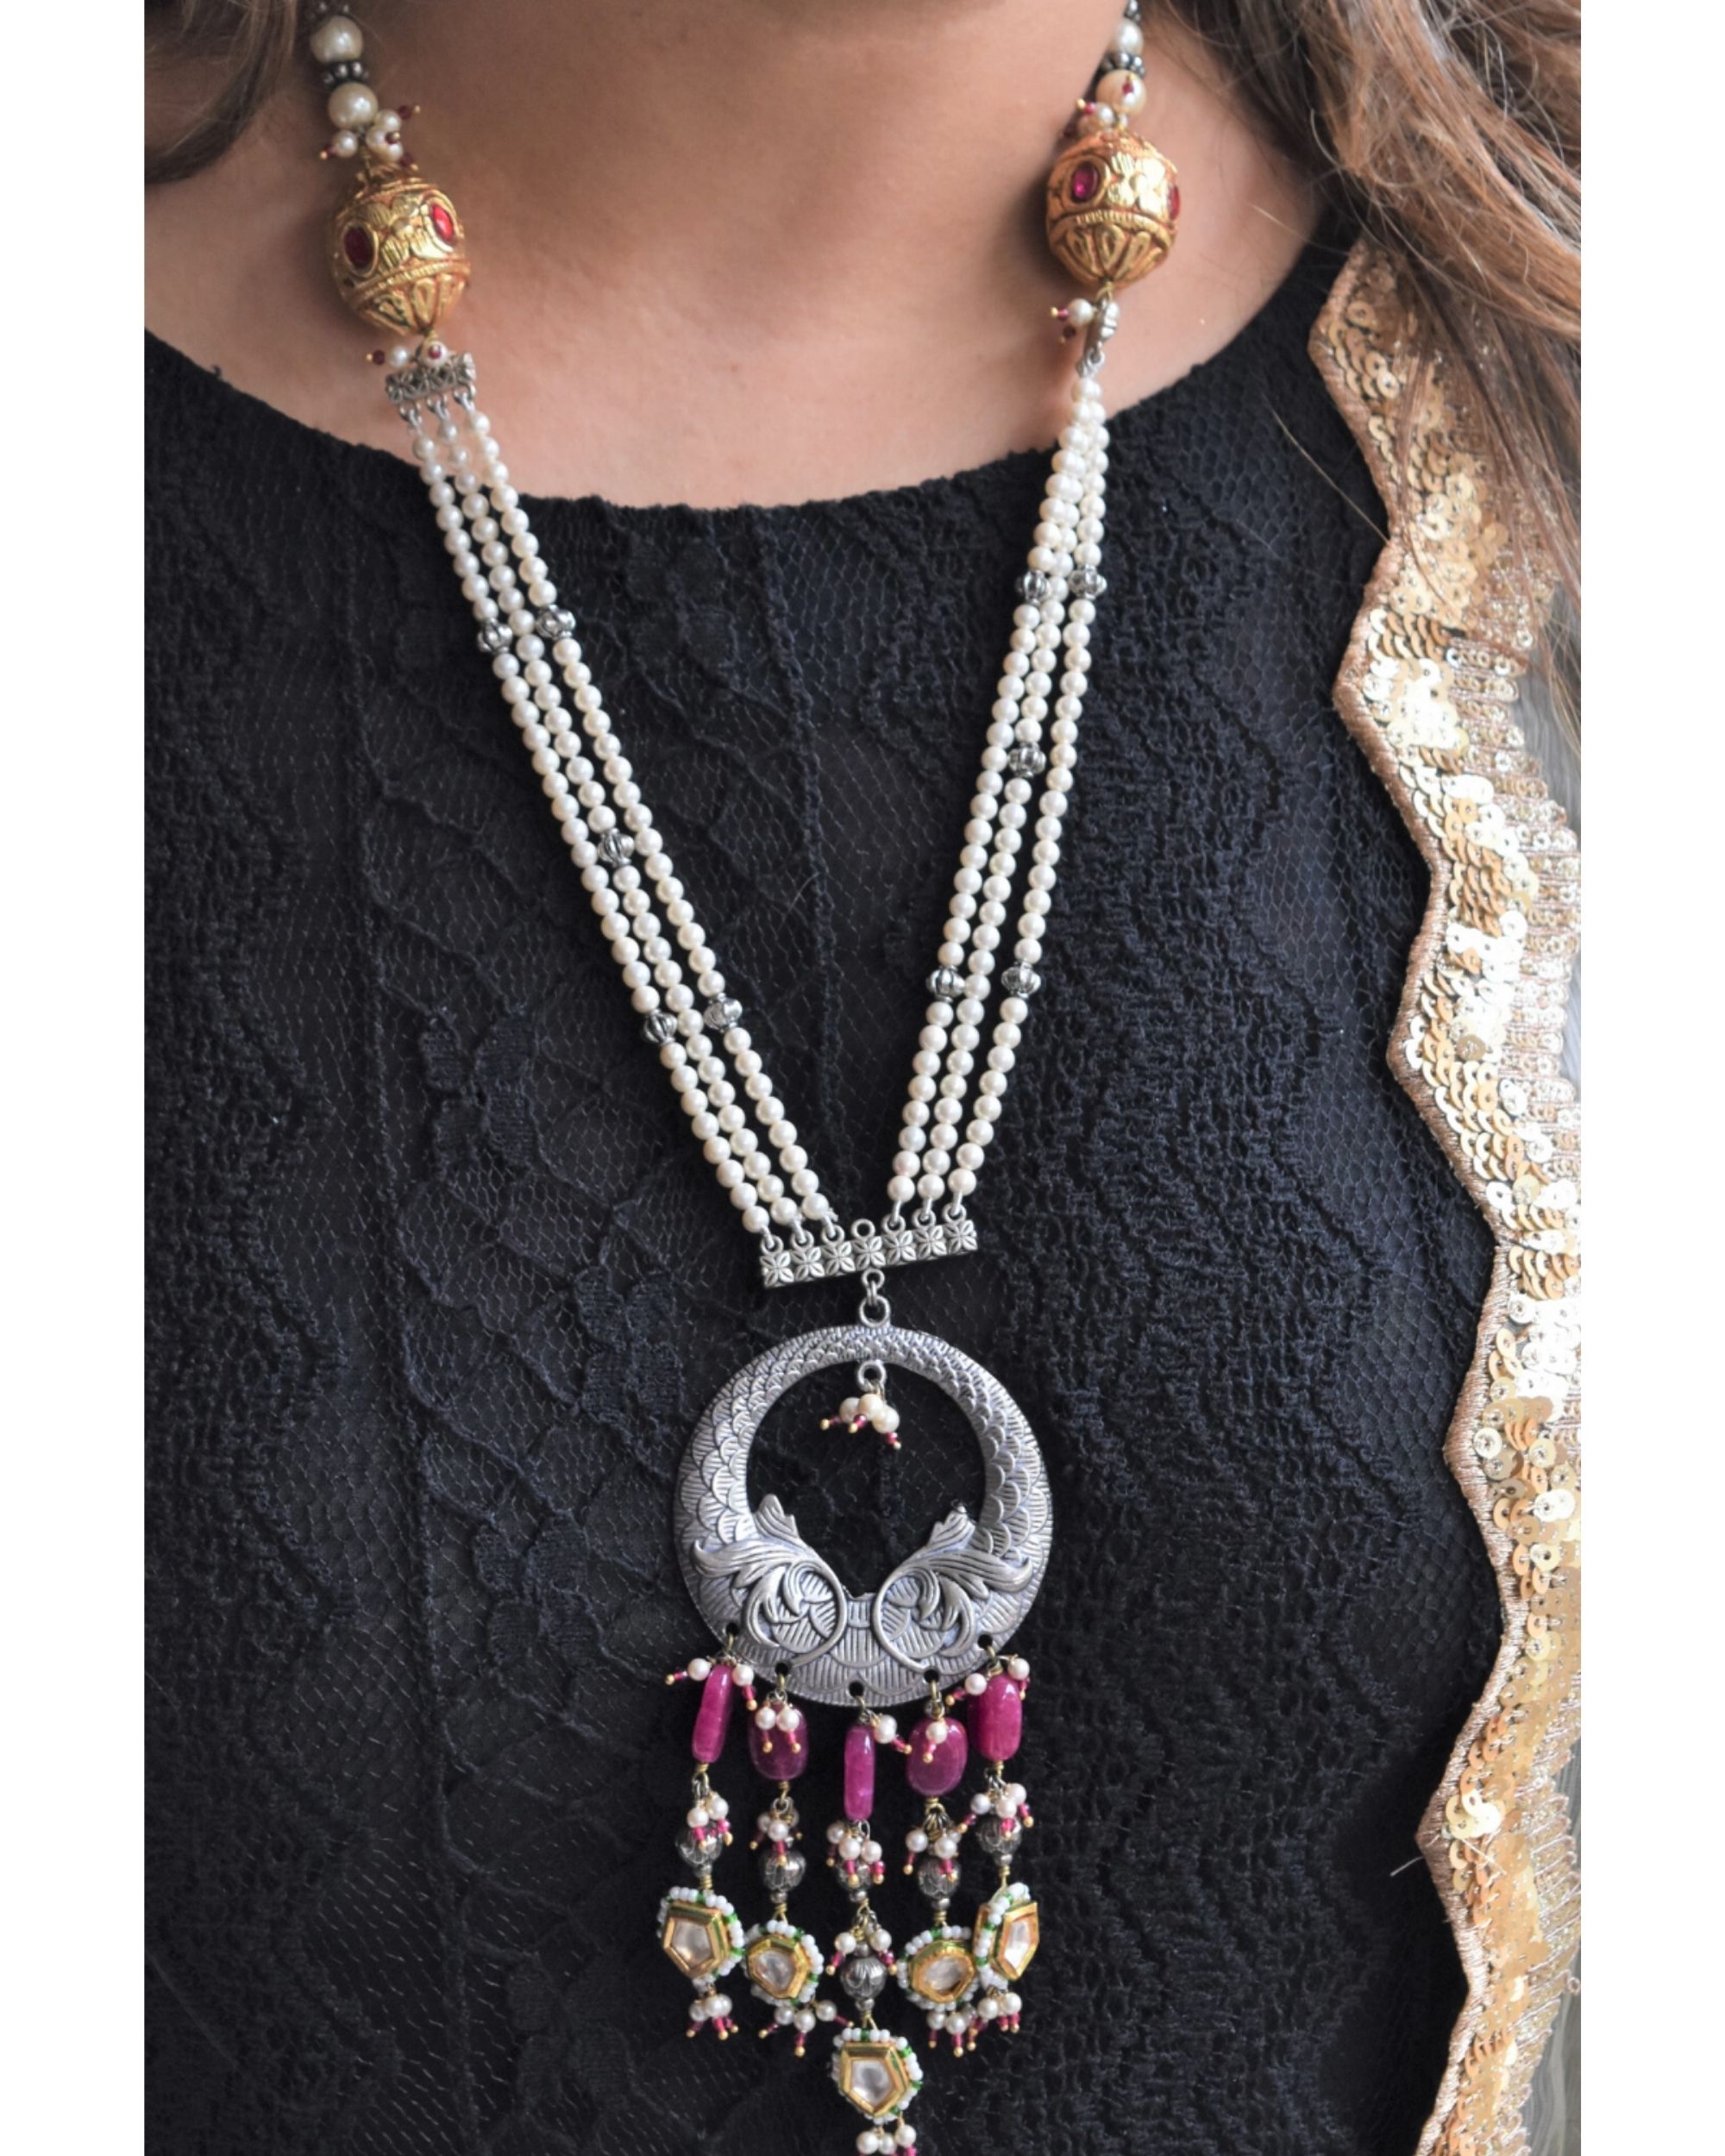 Swarna matsya pearls and beaded neckpiece